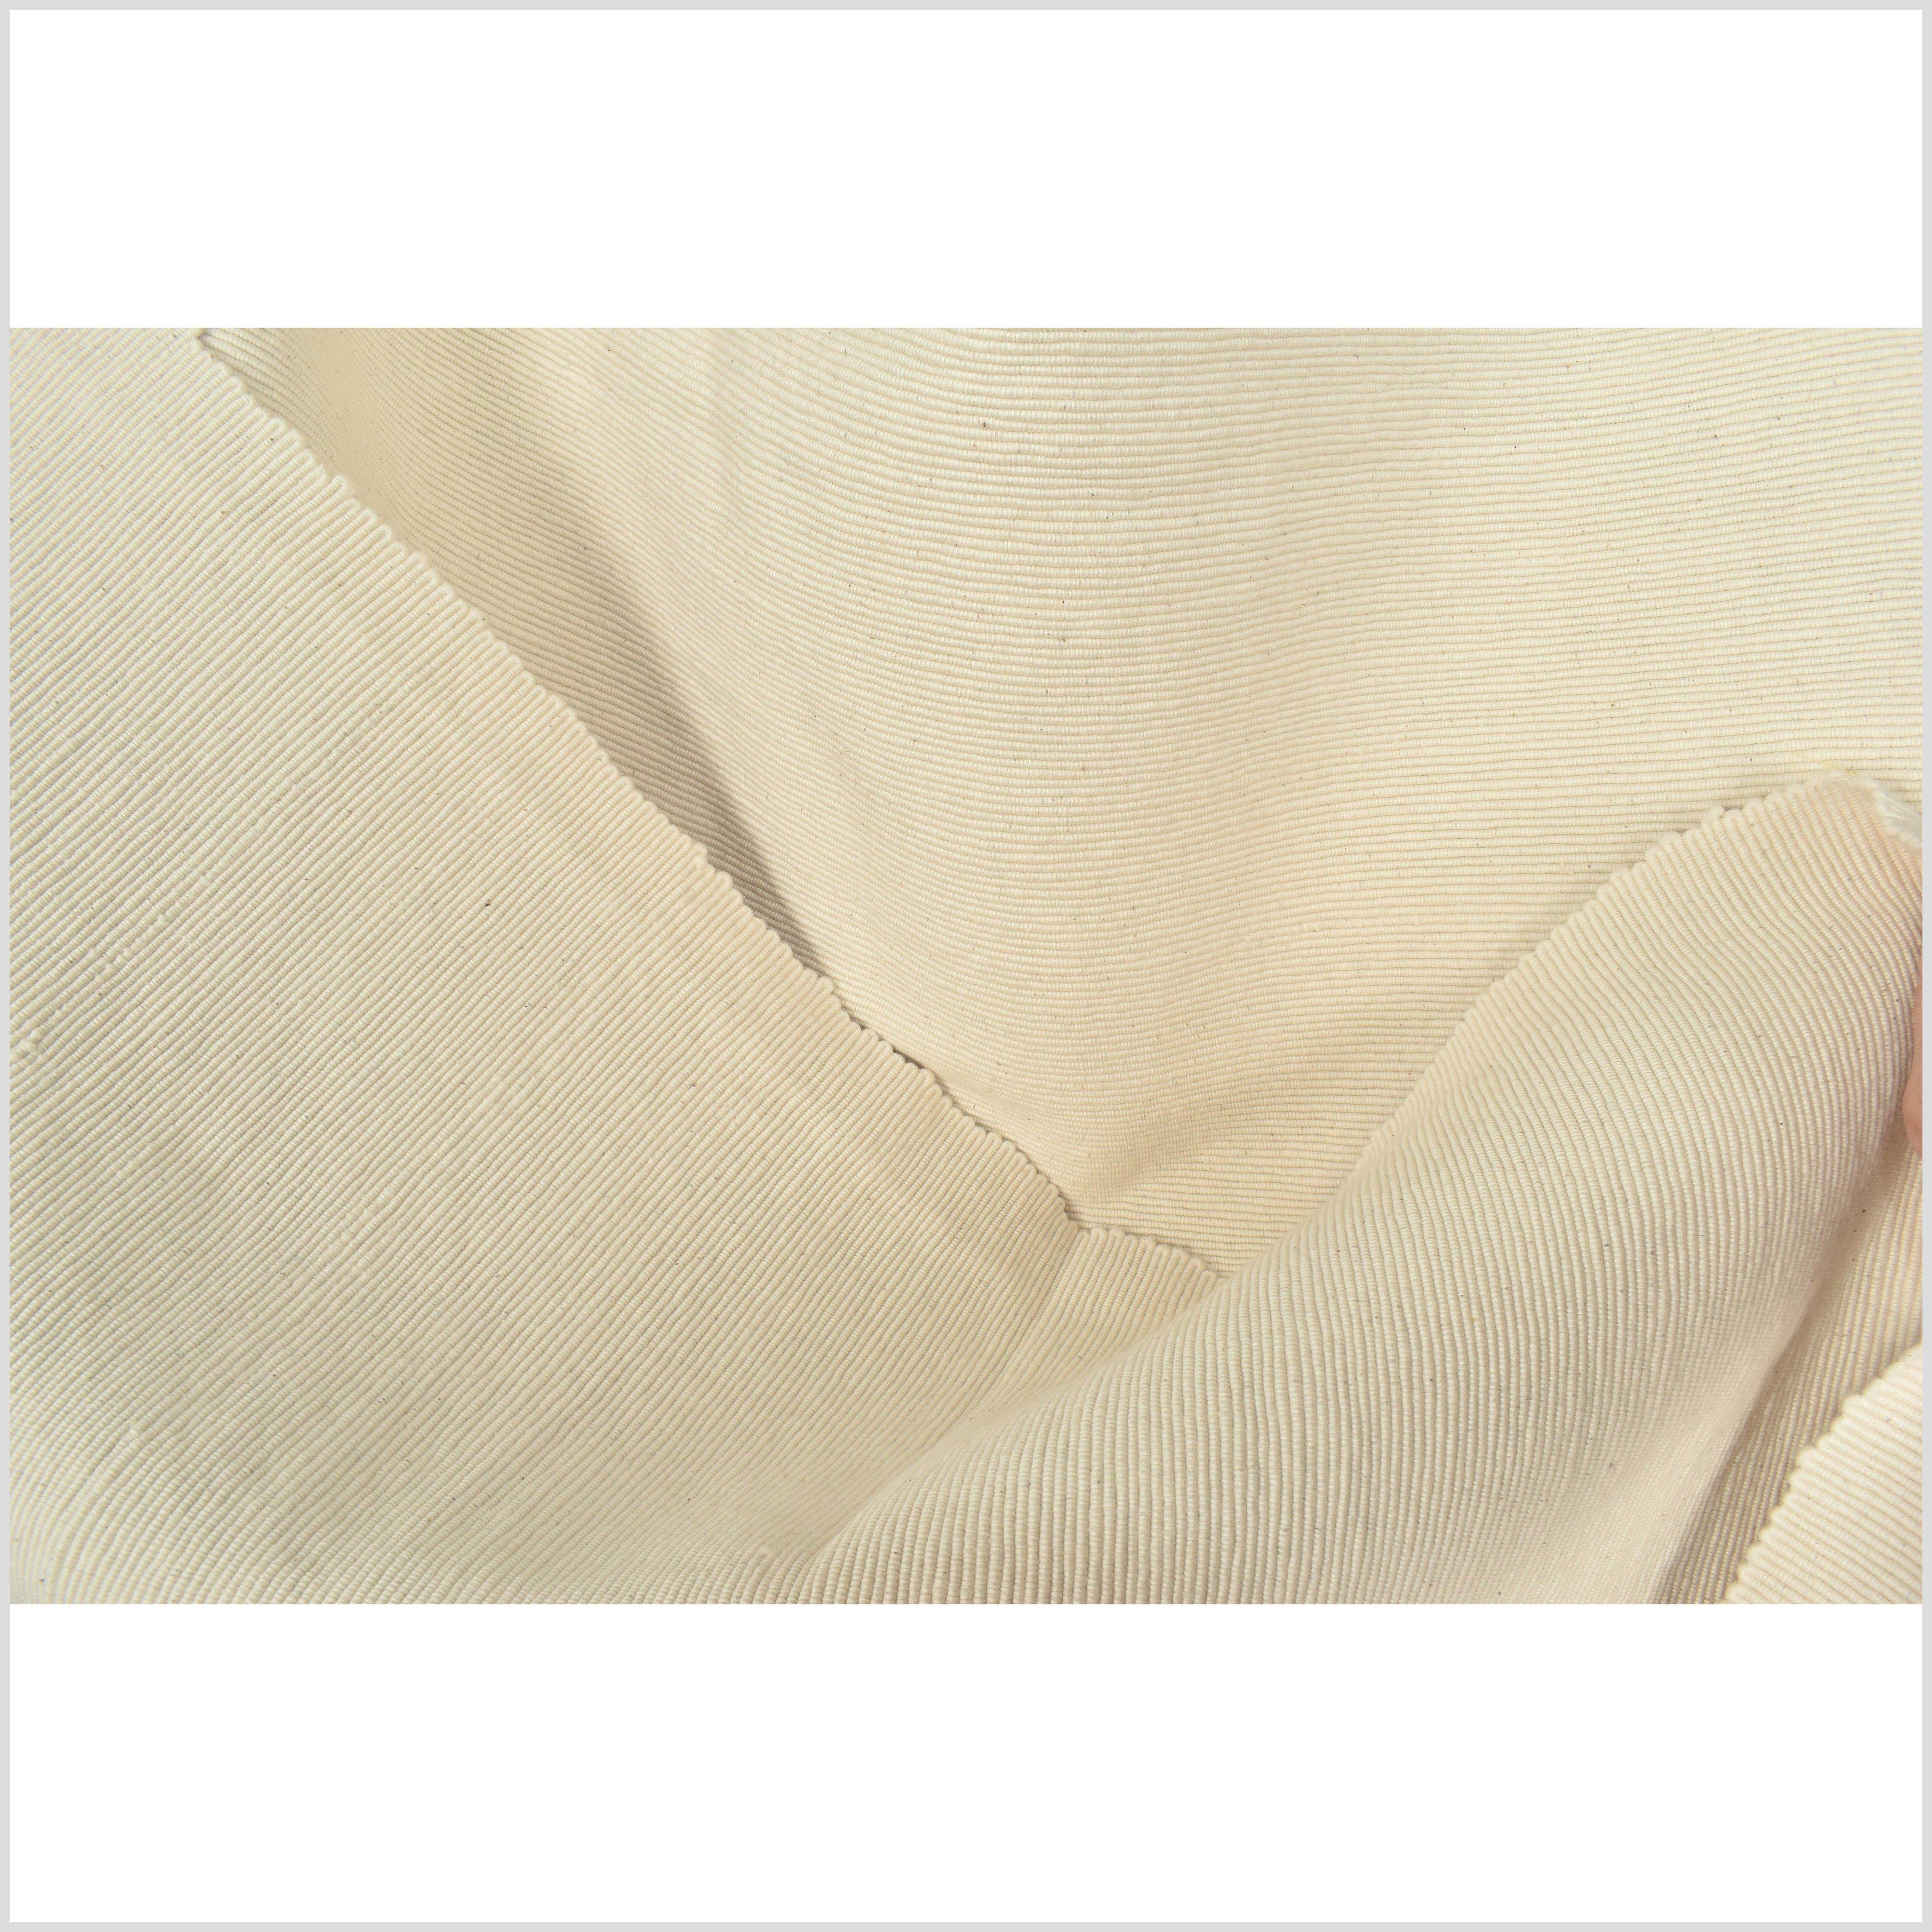 cream cotton fabric texture